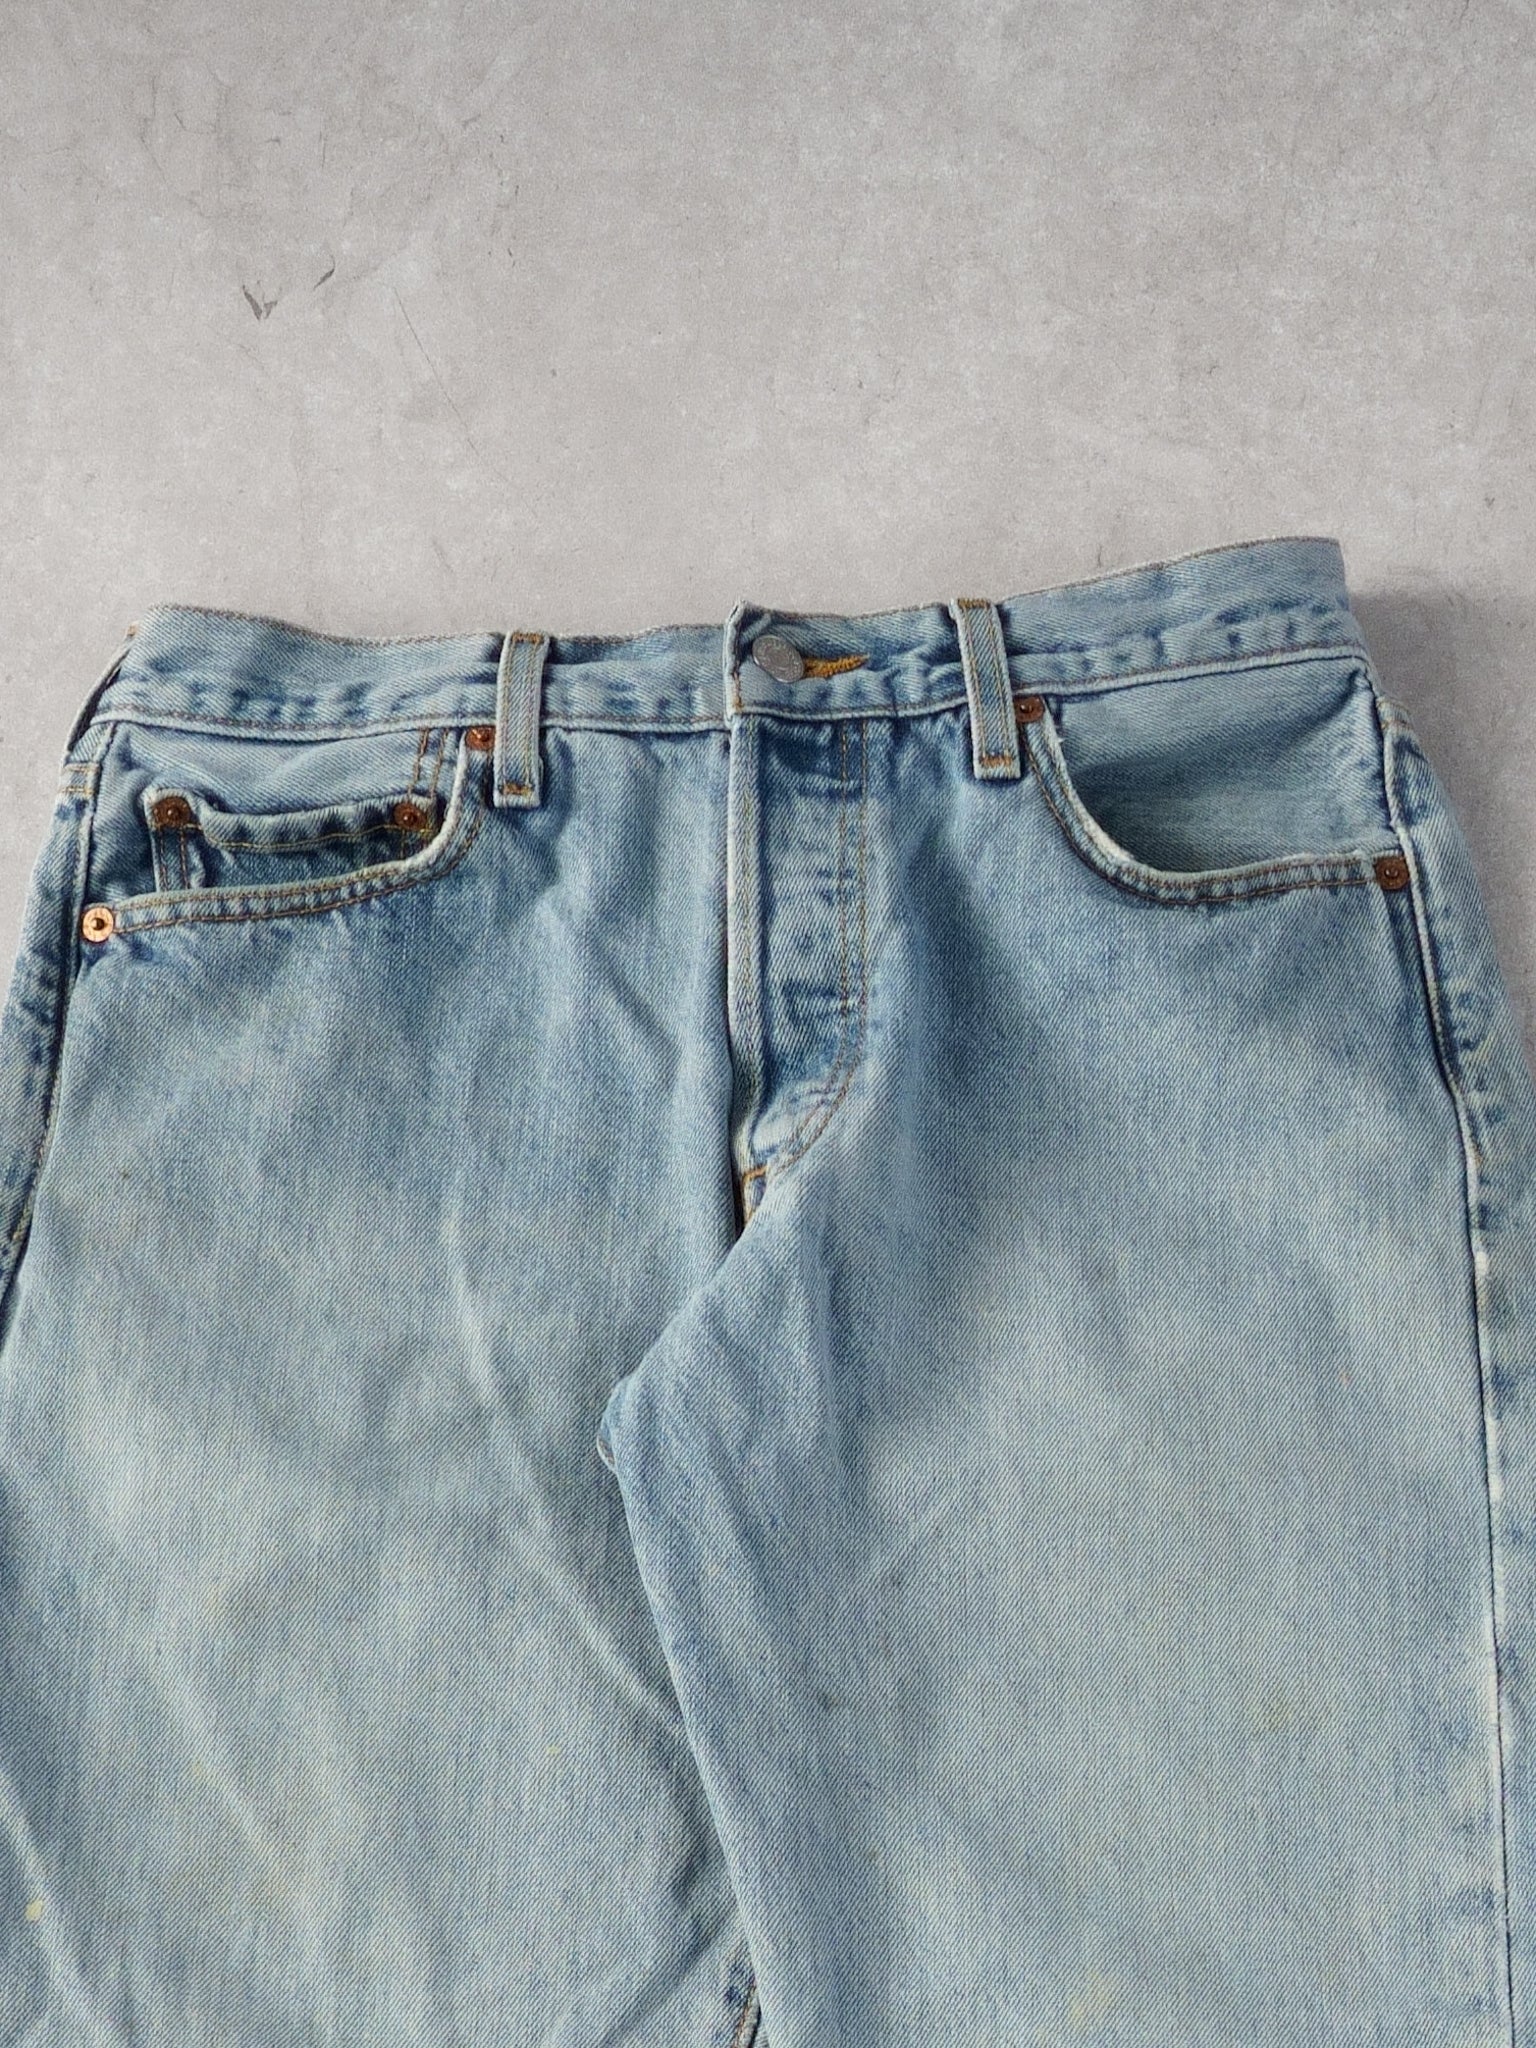 Vintage 90s Light Blue Levi's 501 Denim Jeans (30x30)